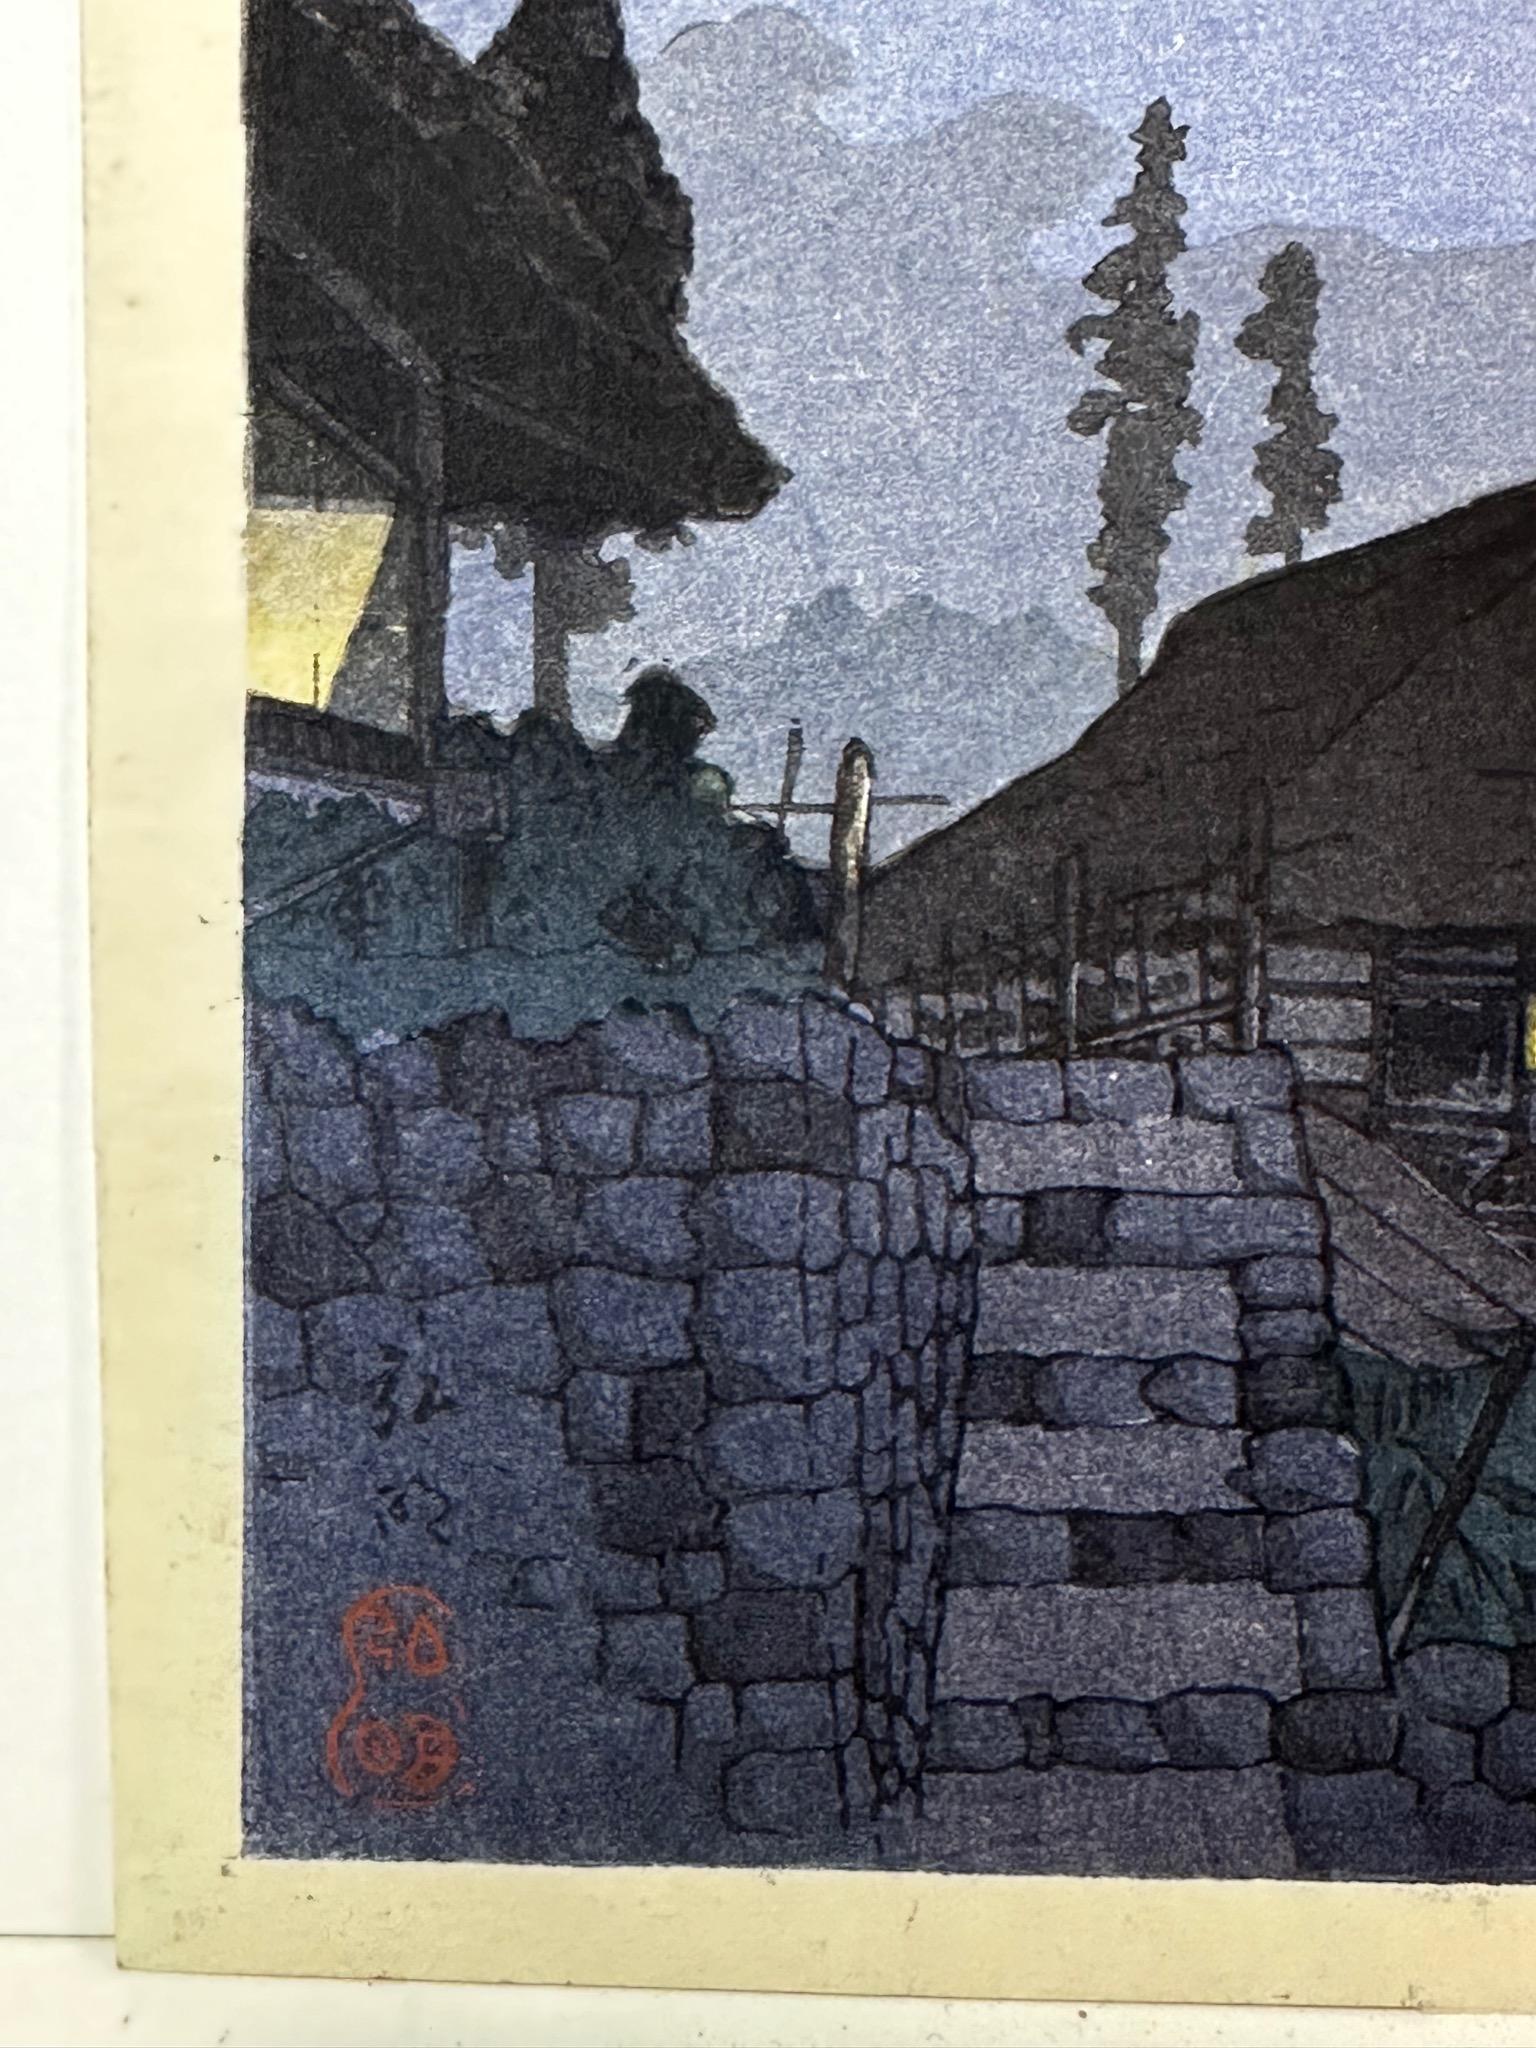 Shotei Takahashi Original Woodblock Print Mt Fuji from Mitsukubo 1936 10